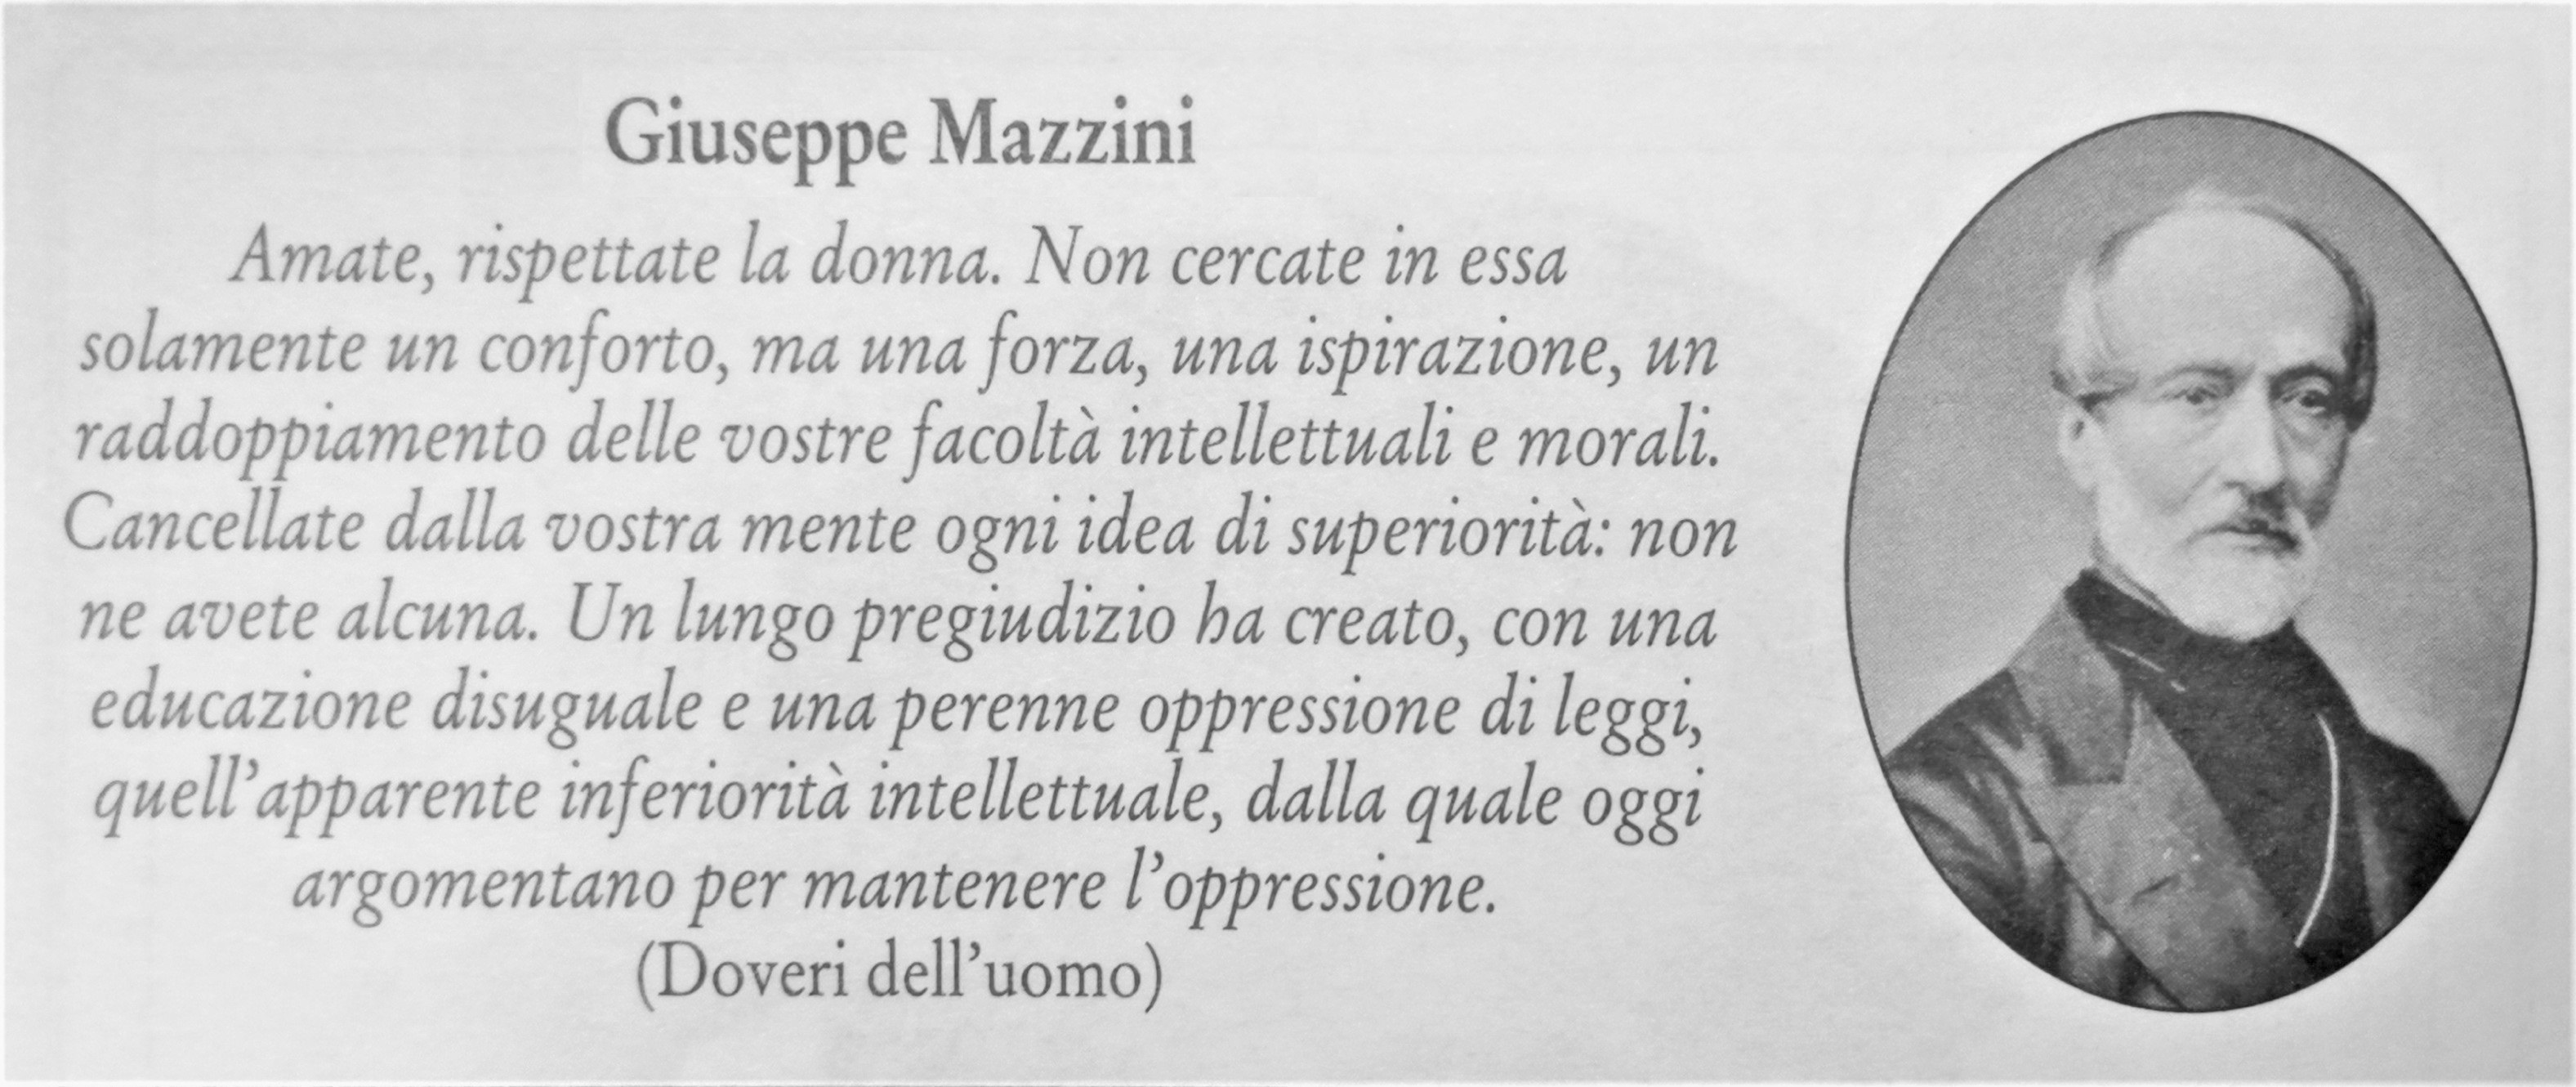 Mazzini 1